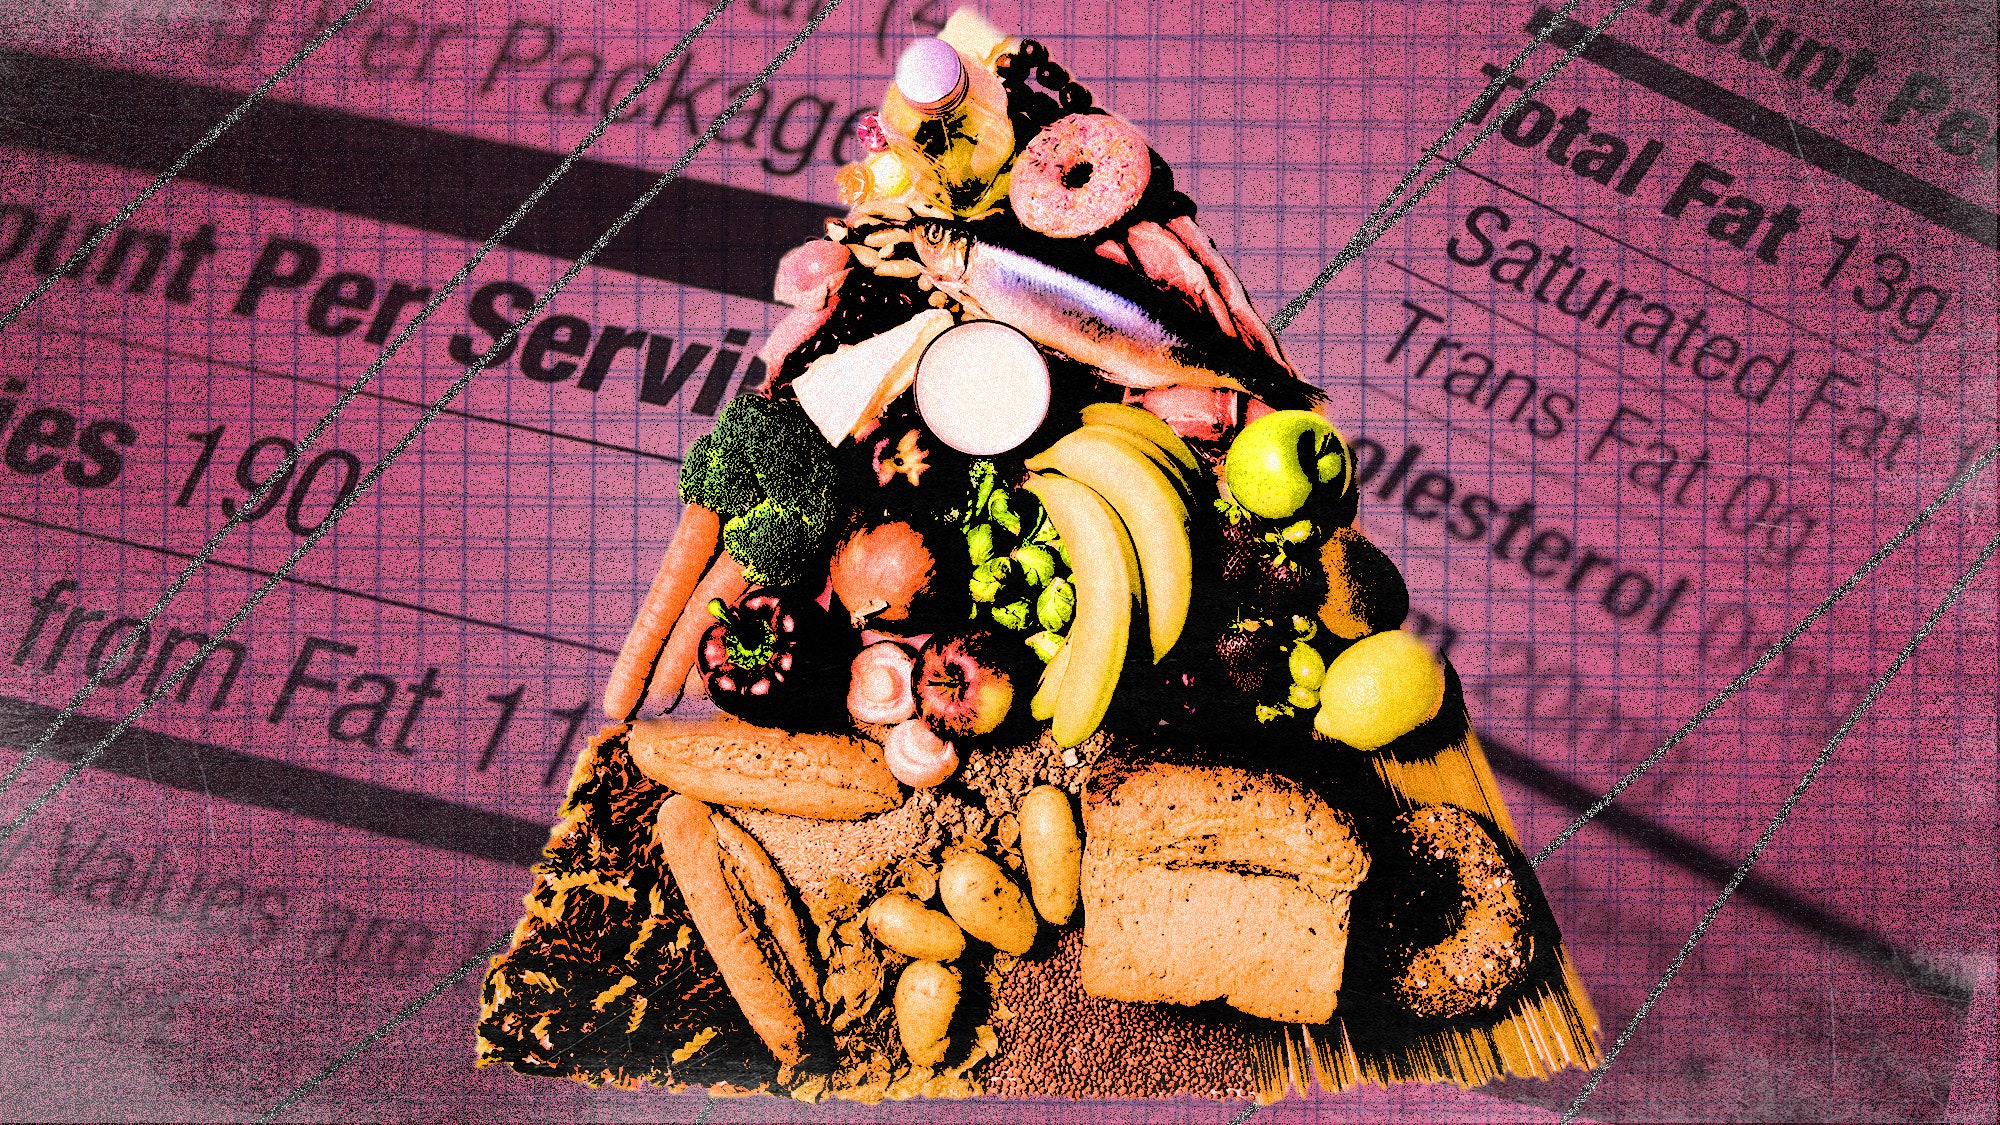 foodpyramid2.jpg